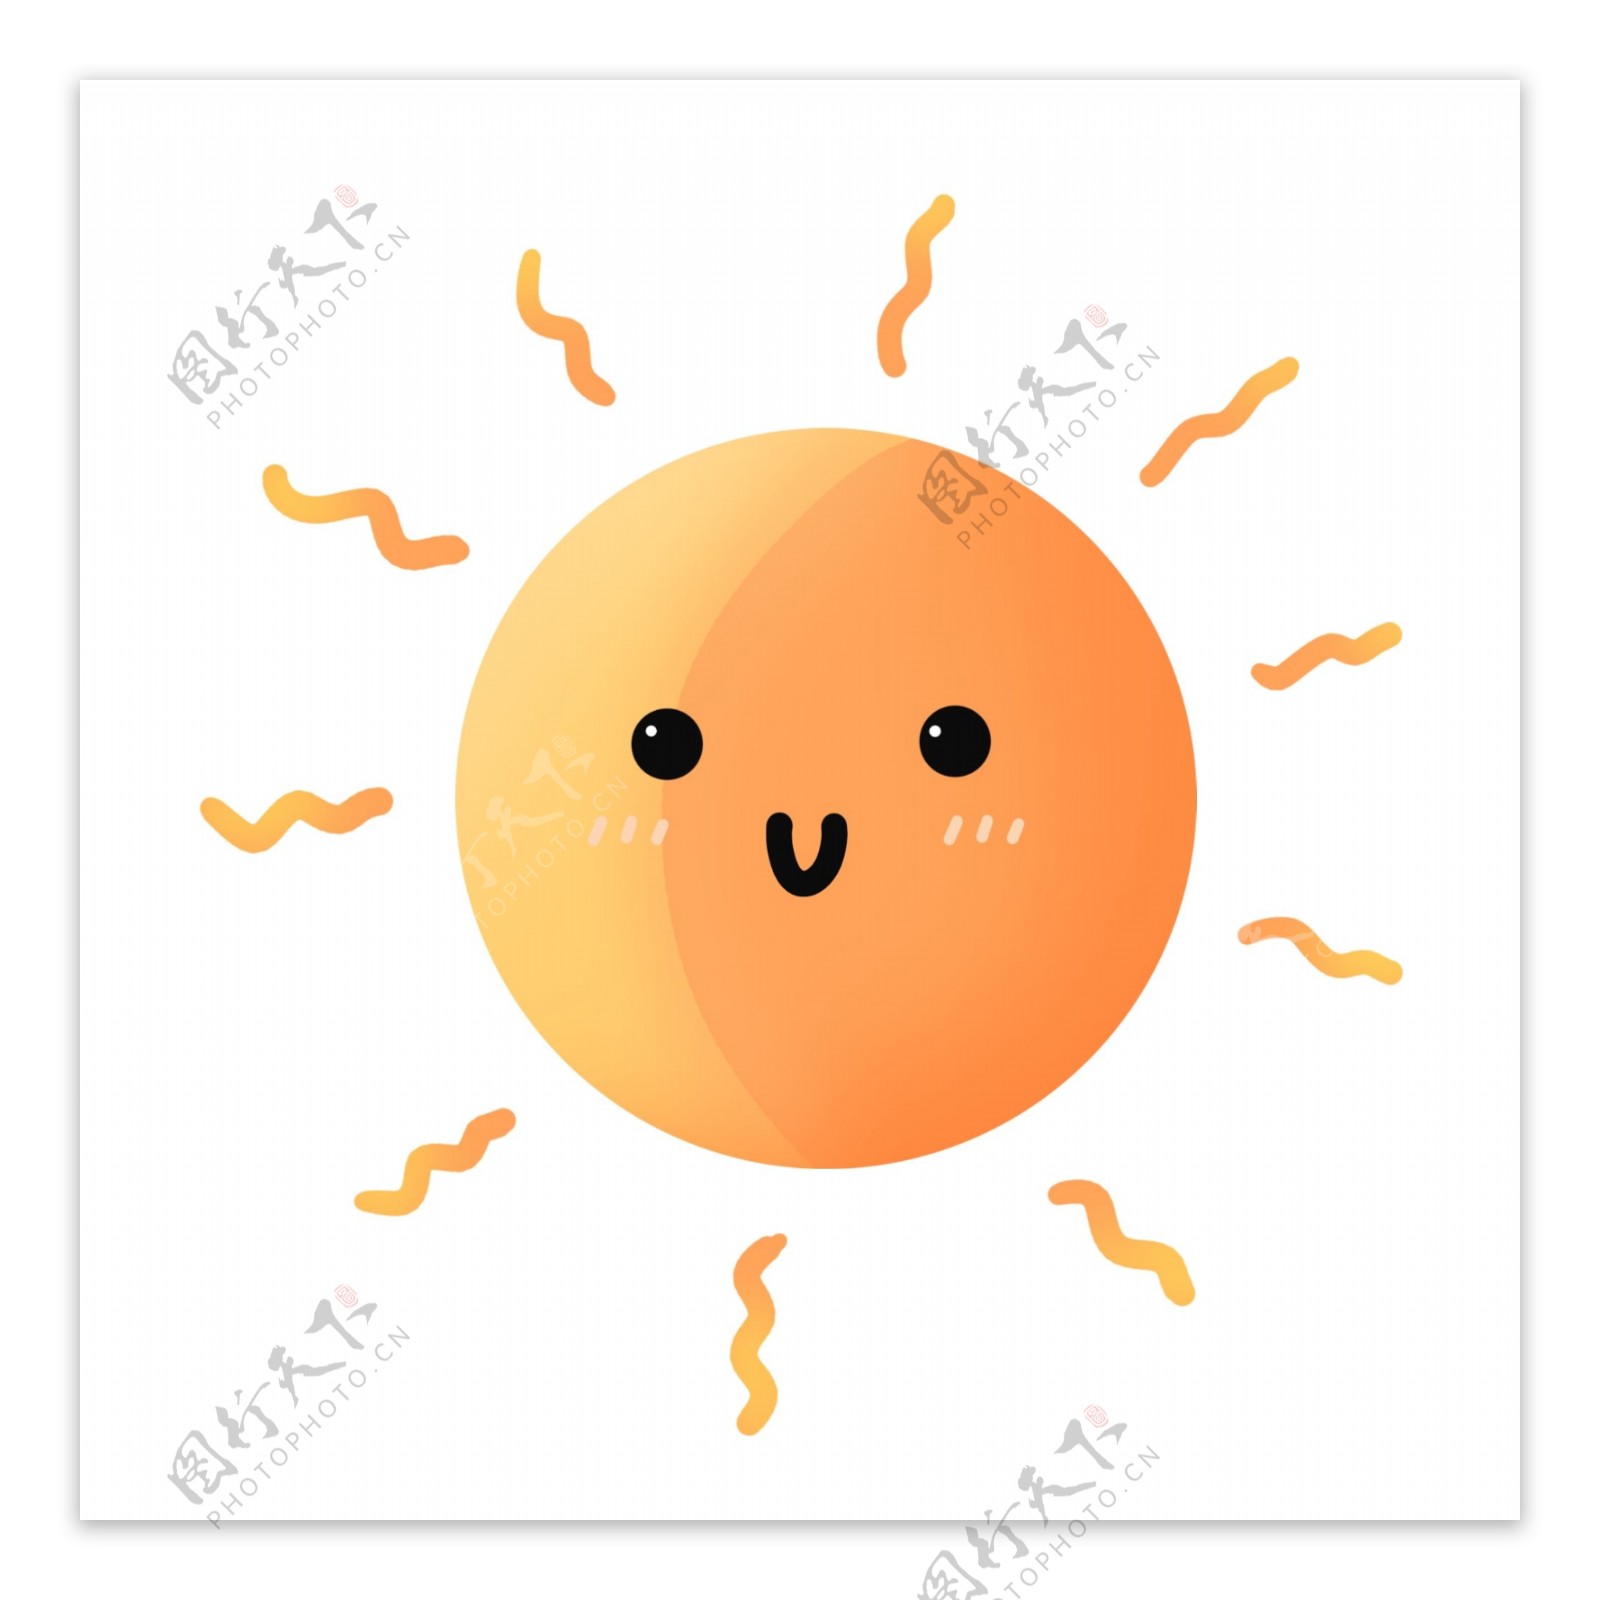 橙黄色手绘圆形可爱夏季炎热太阳